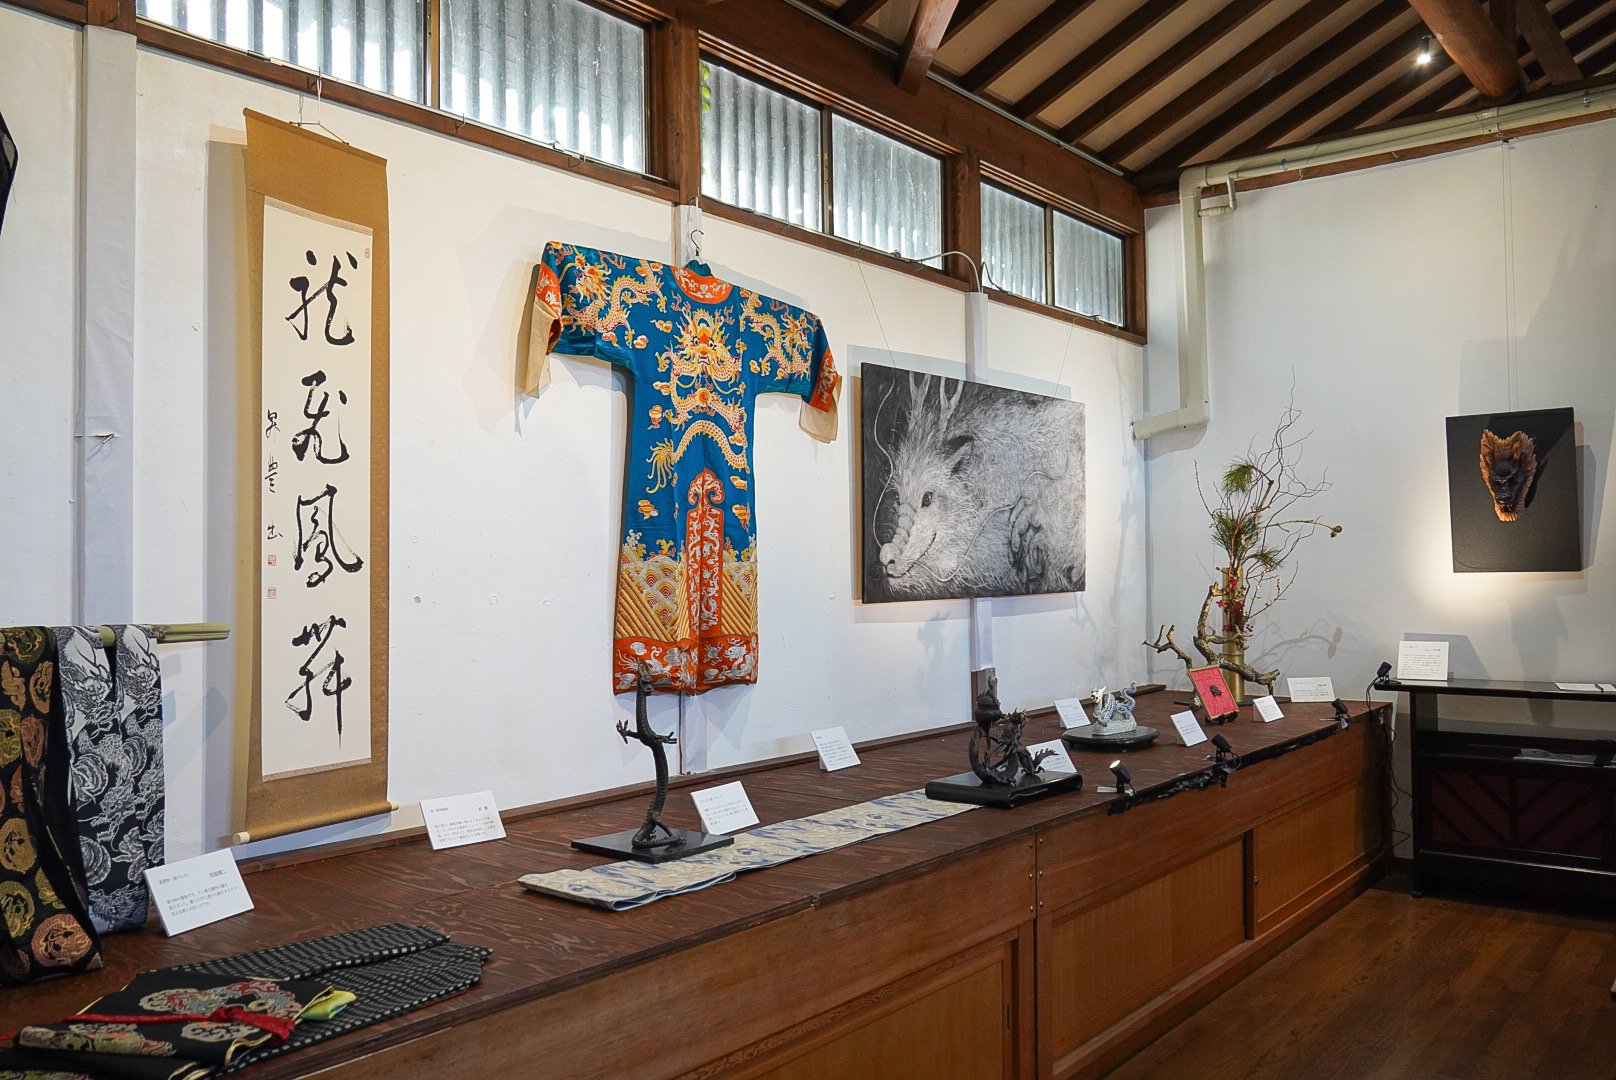 龍尽くしの展示。龍の刺繡が施された京劇の衣装なども。